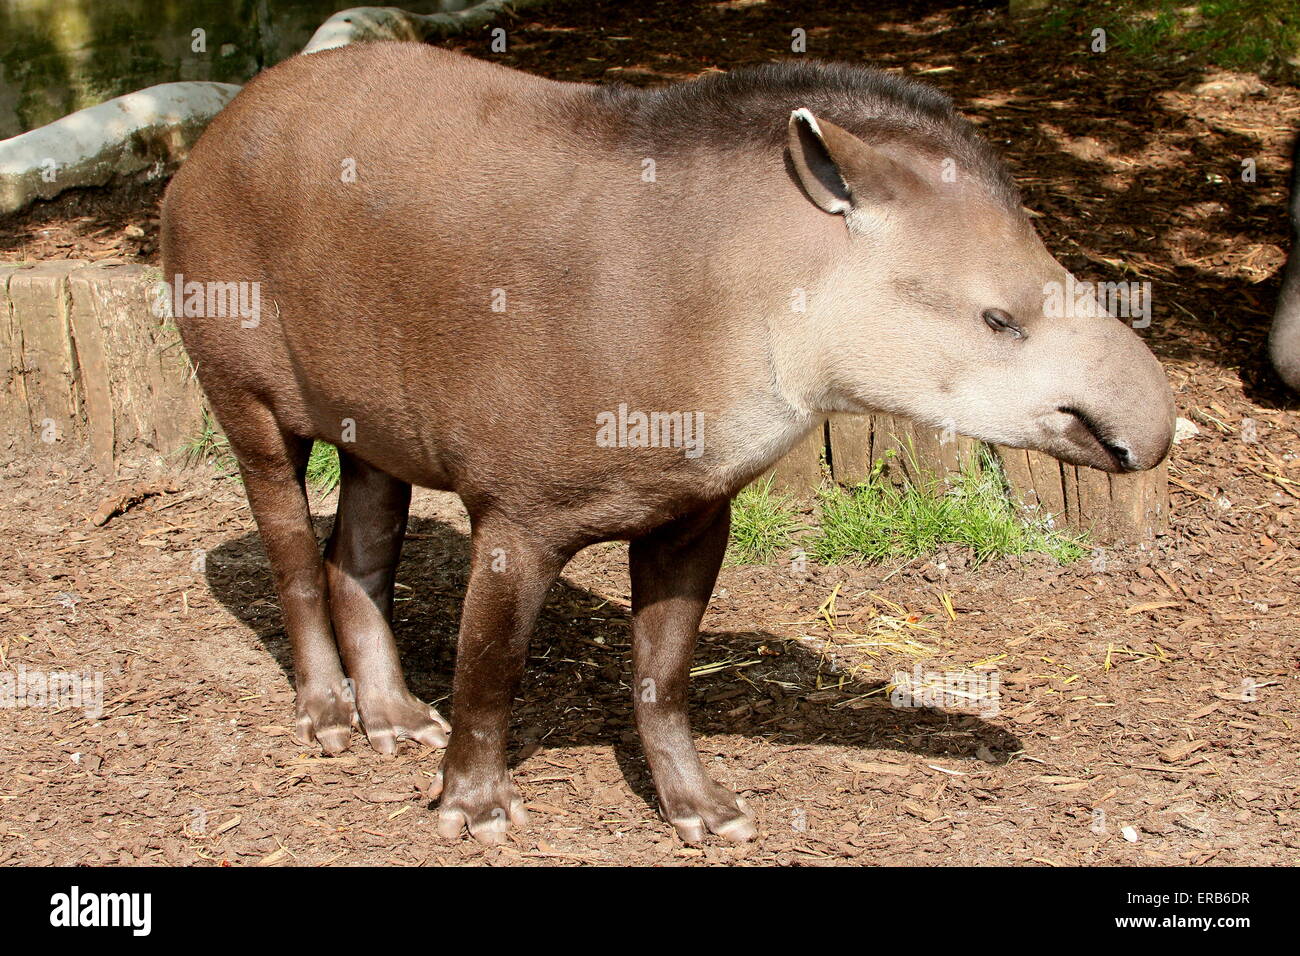 South American  Lowland Tapir or Brazilian Tapir (Tapirus terrestris) Stock Photo